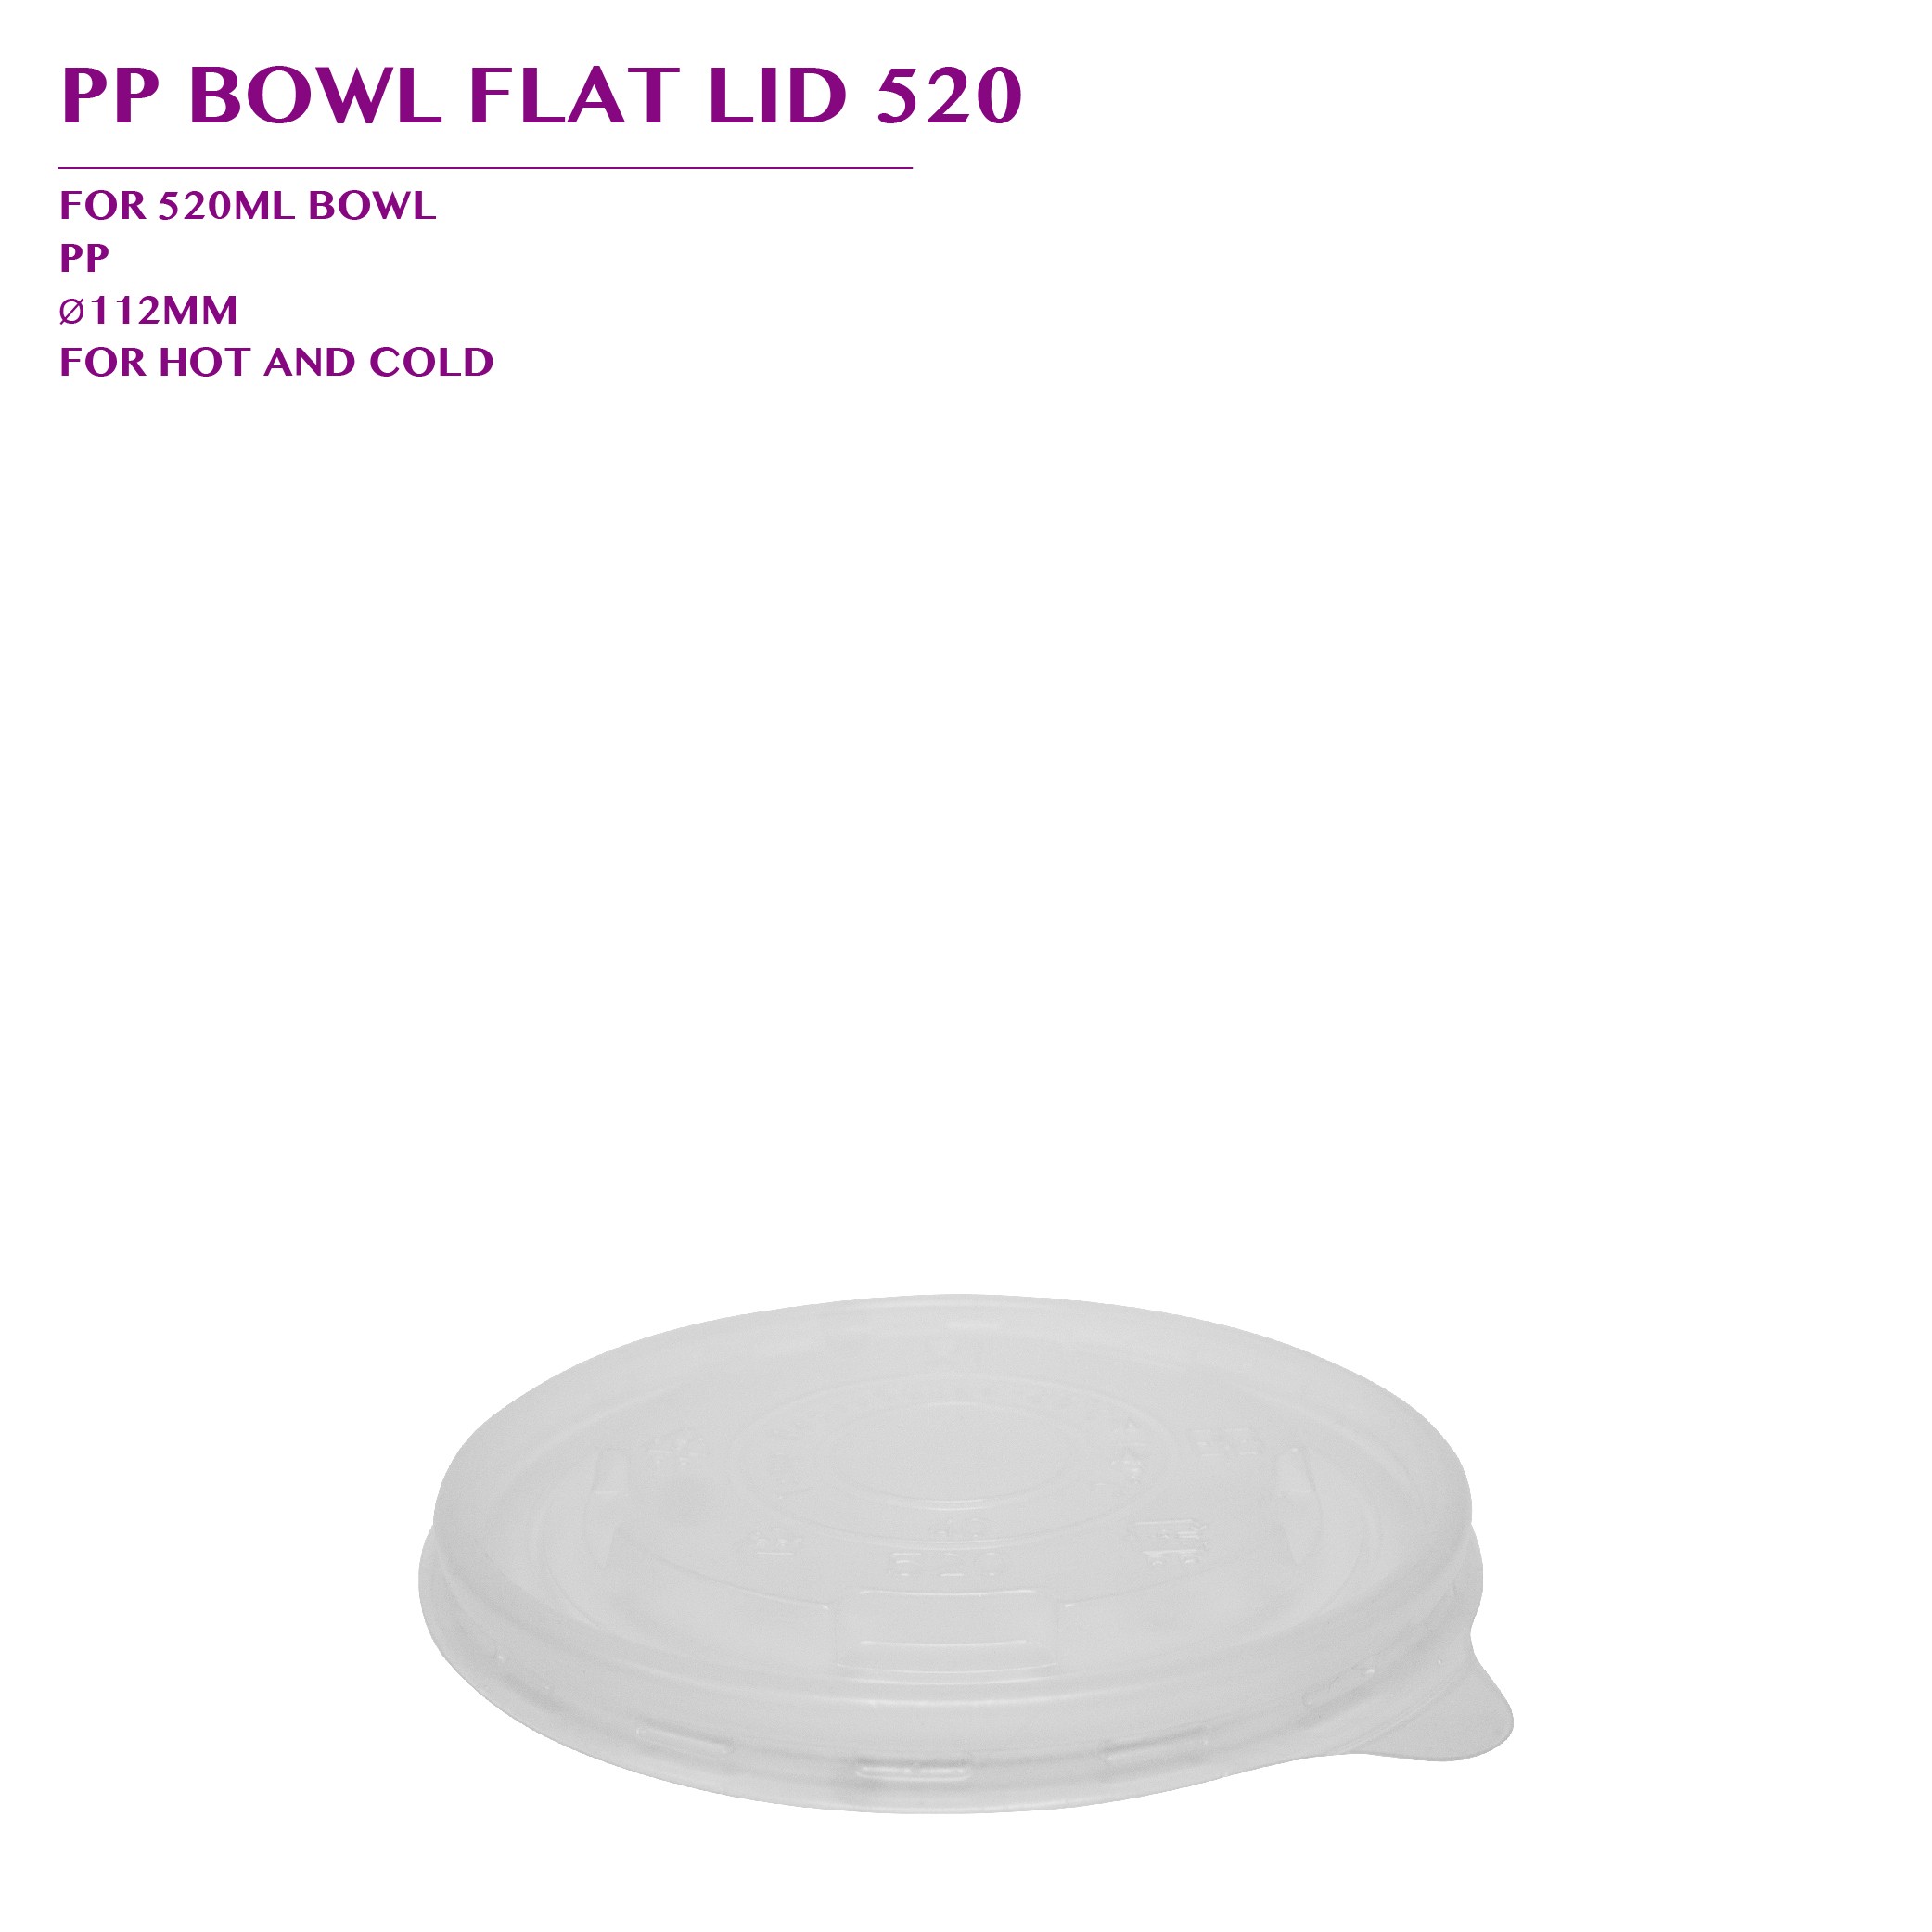 PRE-ORDER PP BOWL FLAT LID 520 1000PCS/CTN